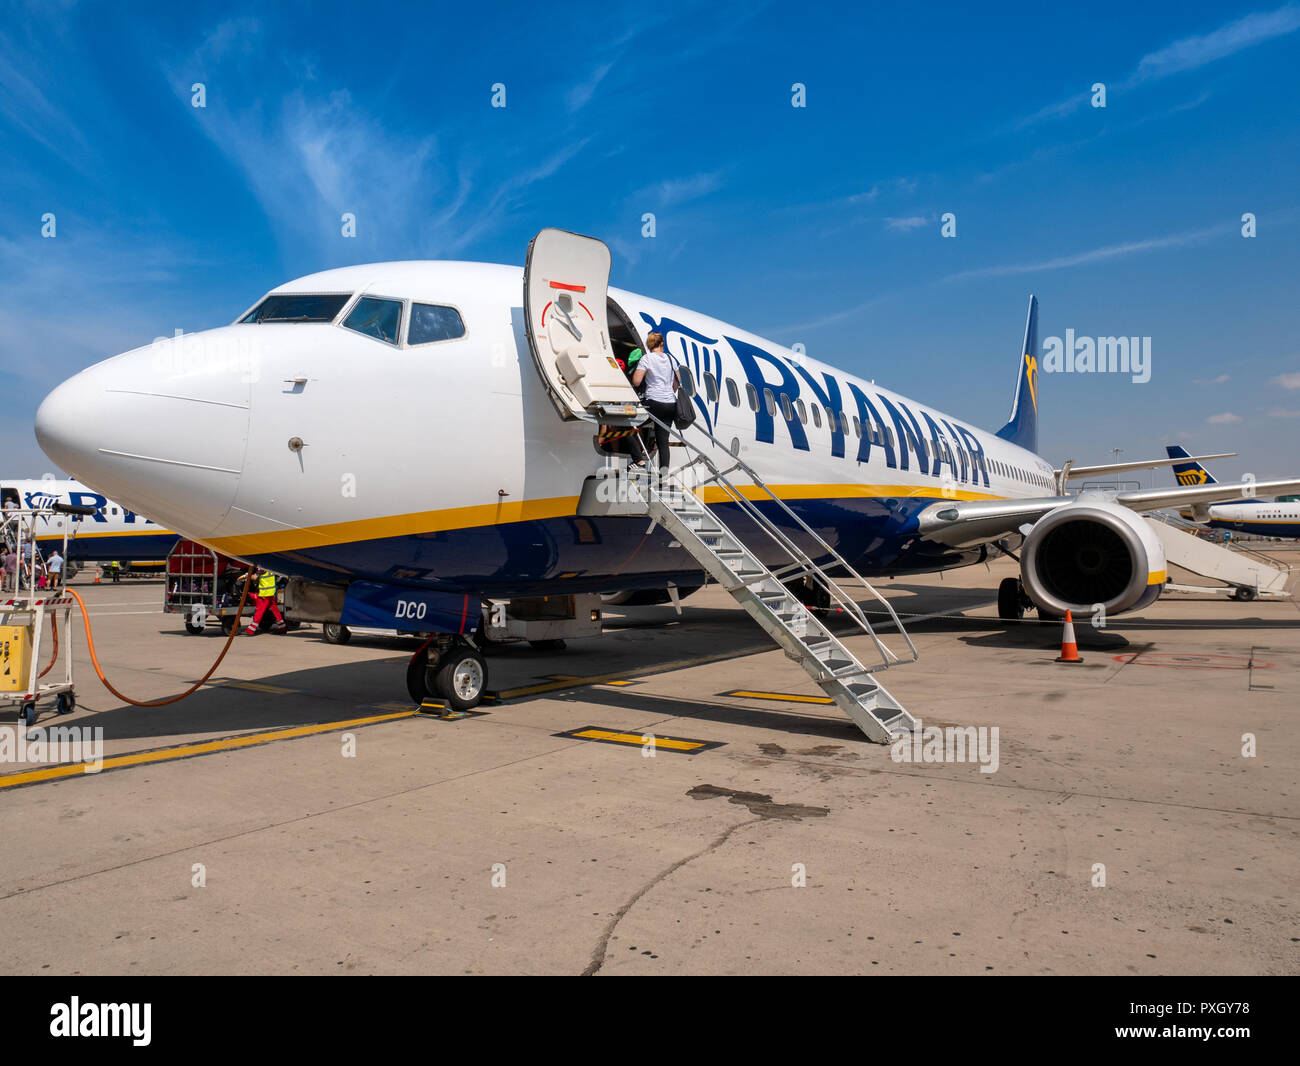 L'embarquement d'avion de Ryanair sur le tarmac, l'aéroport de Stansted, Royaume-Uni Banque D'Images